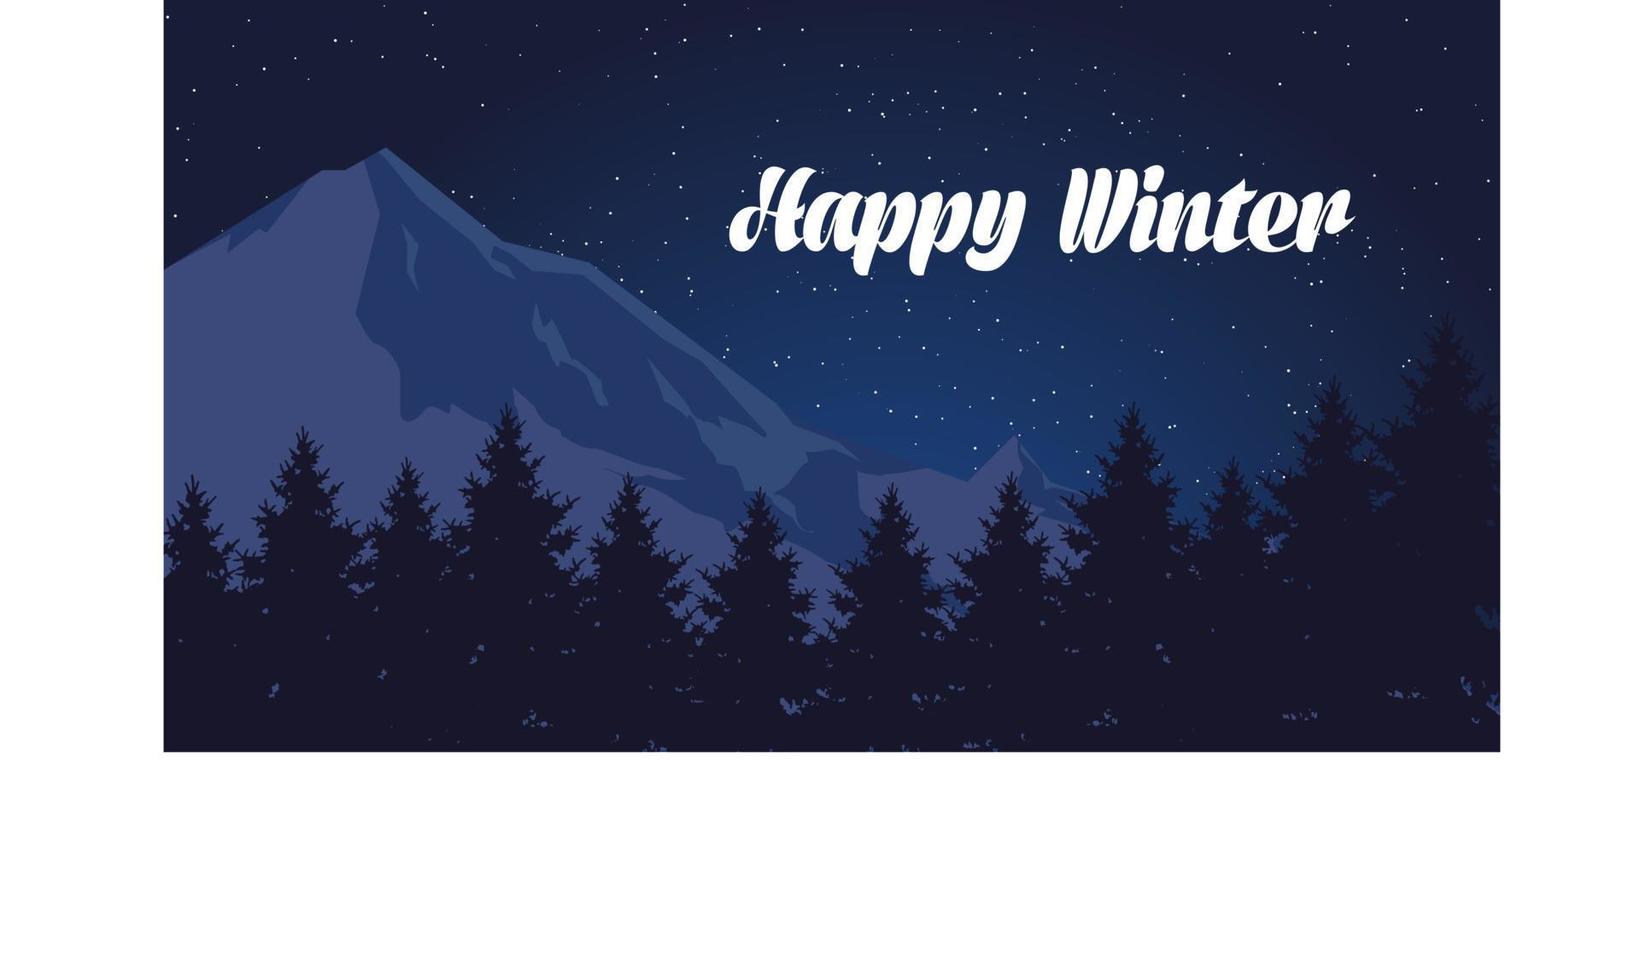 Winterschlussverkauf-Banner-Postschablone mit schneebedecktem Hintergrund vektor